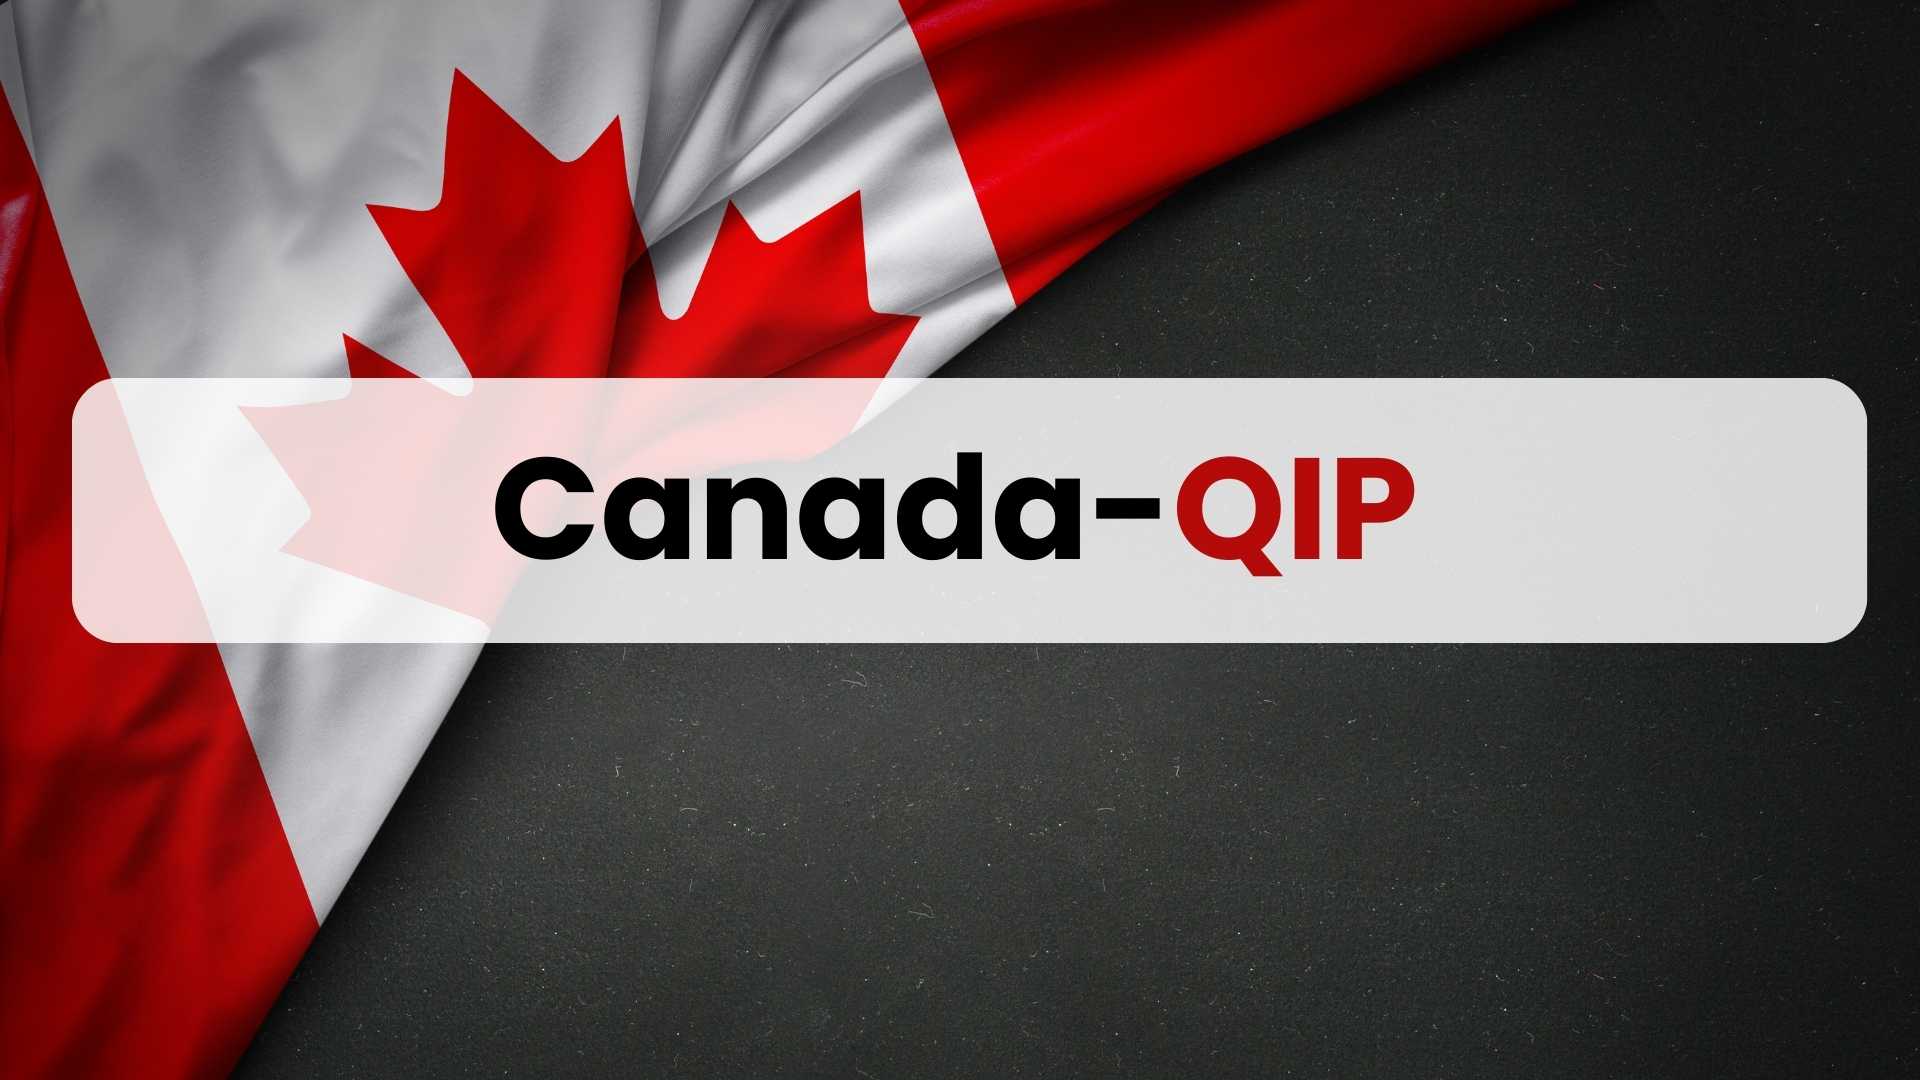 Canada-QIP (Quebec Immigration Programs)